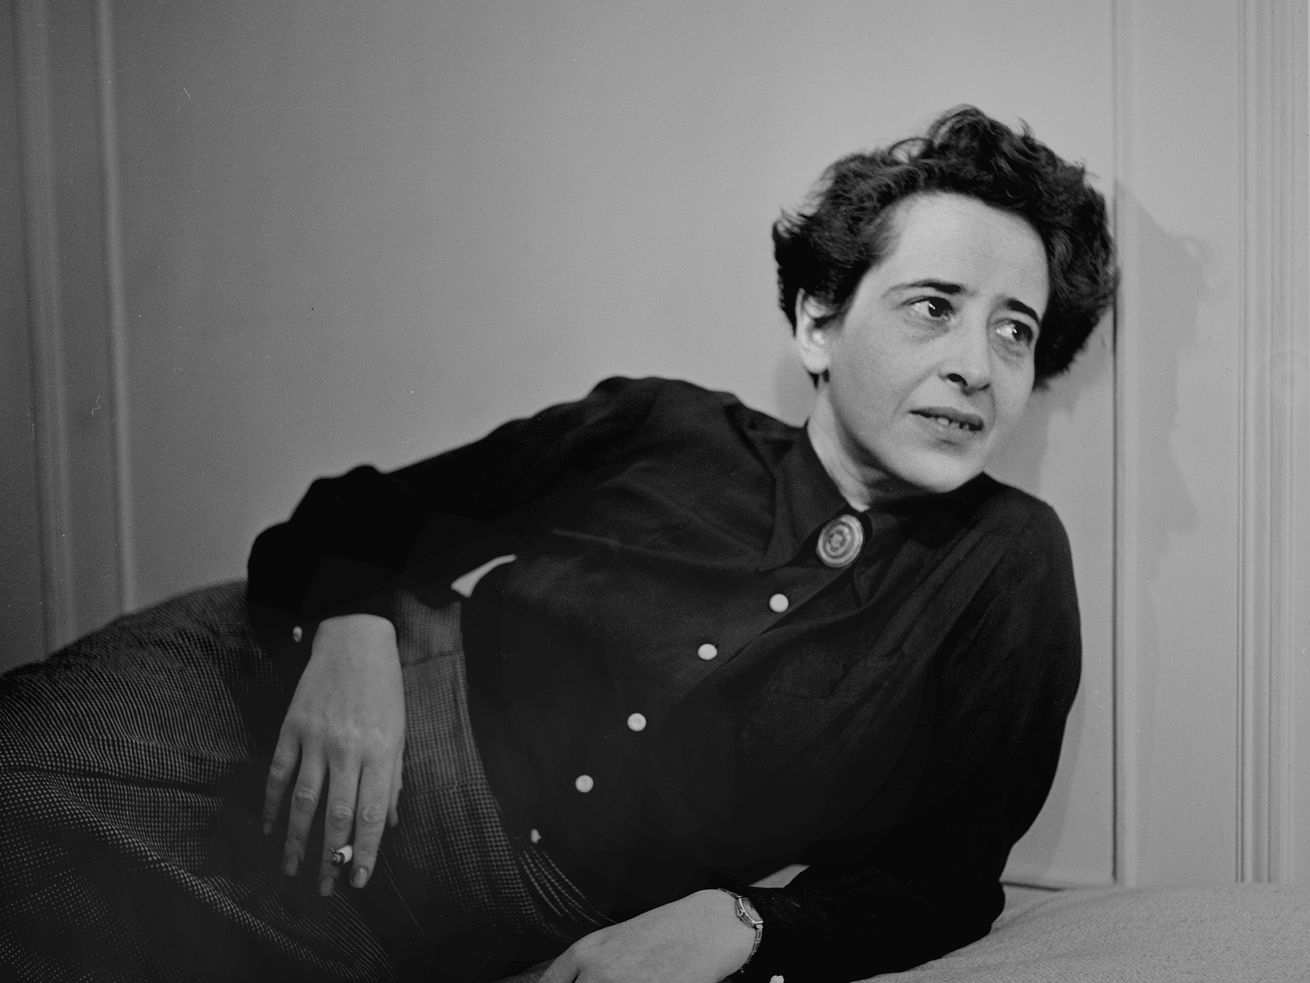 Photographic portrait of philosopher Hannah Arendt.